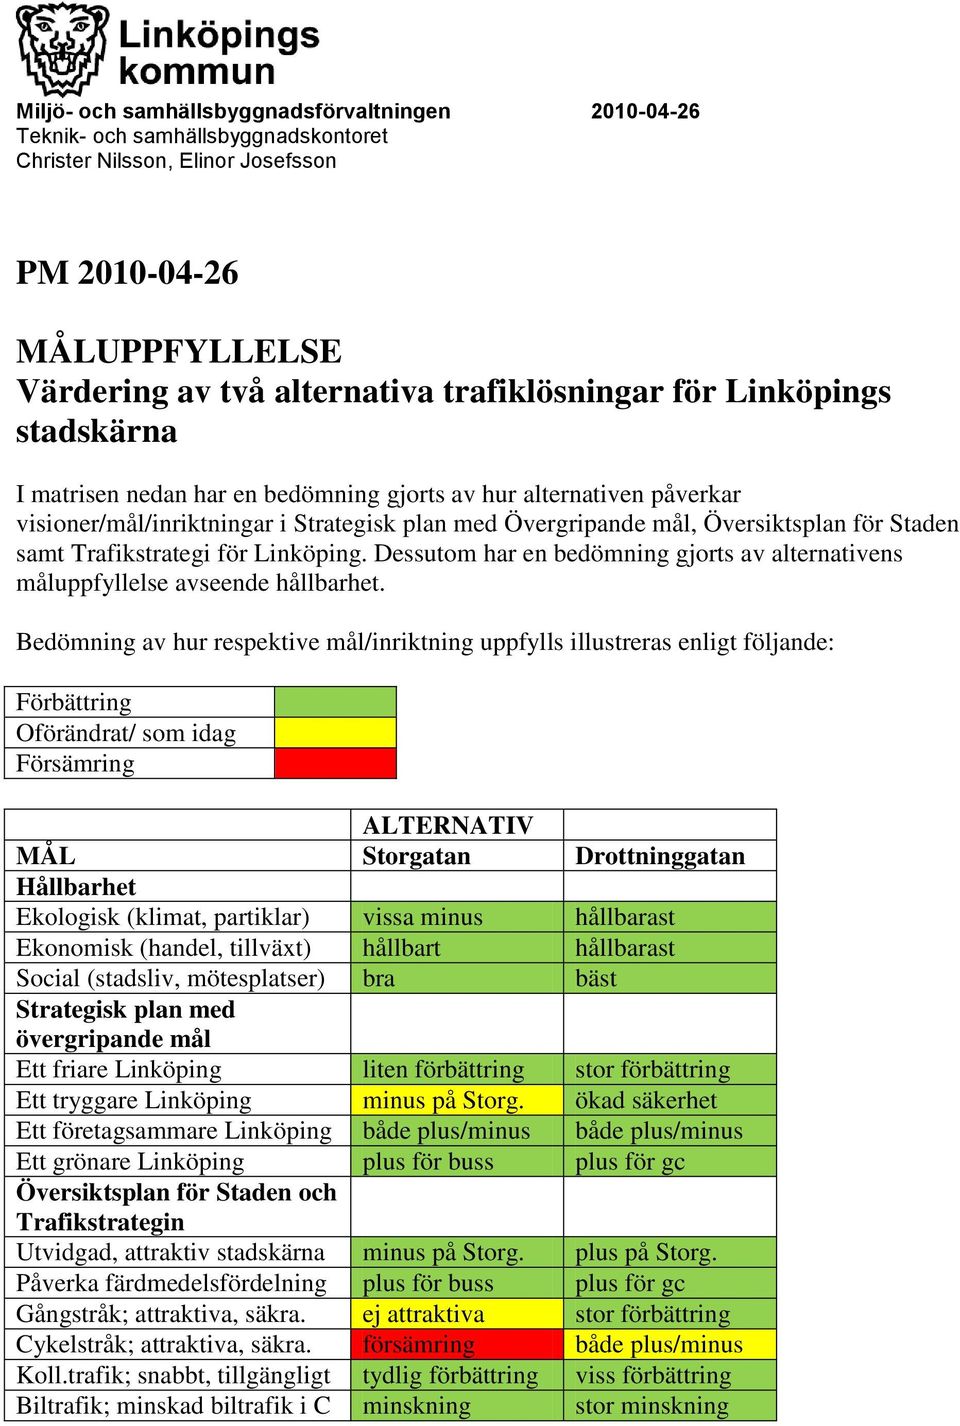 Trafikstrategi för Linköping. Dessutom har en bedömning gjorts av alternativens måluppfyllelse avseende hållbarhet.